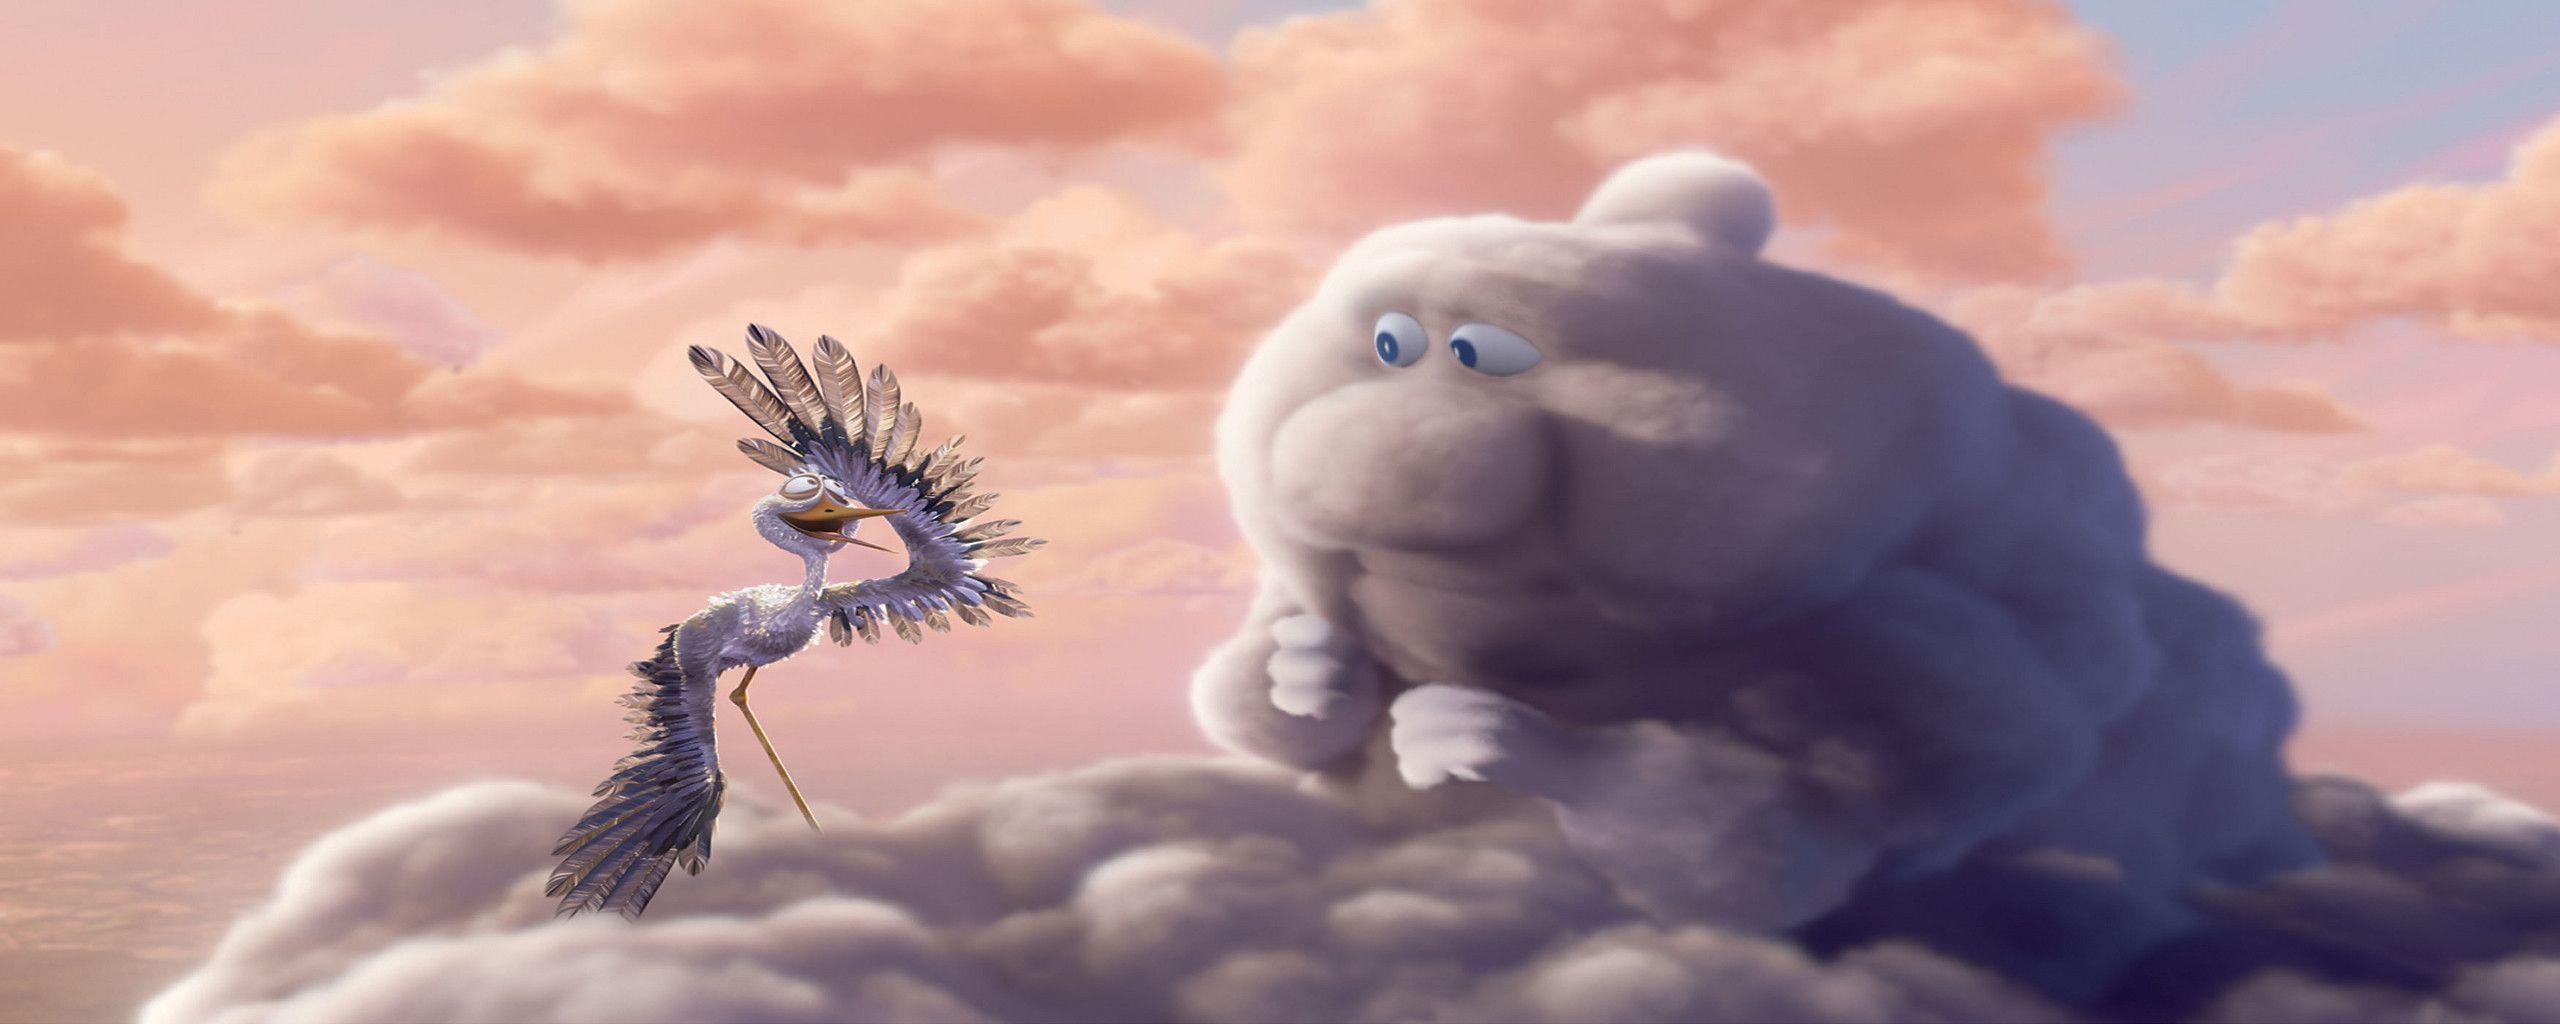 Download Clouds Pixar Wallpapers 2560x1024